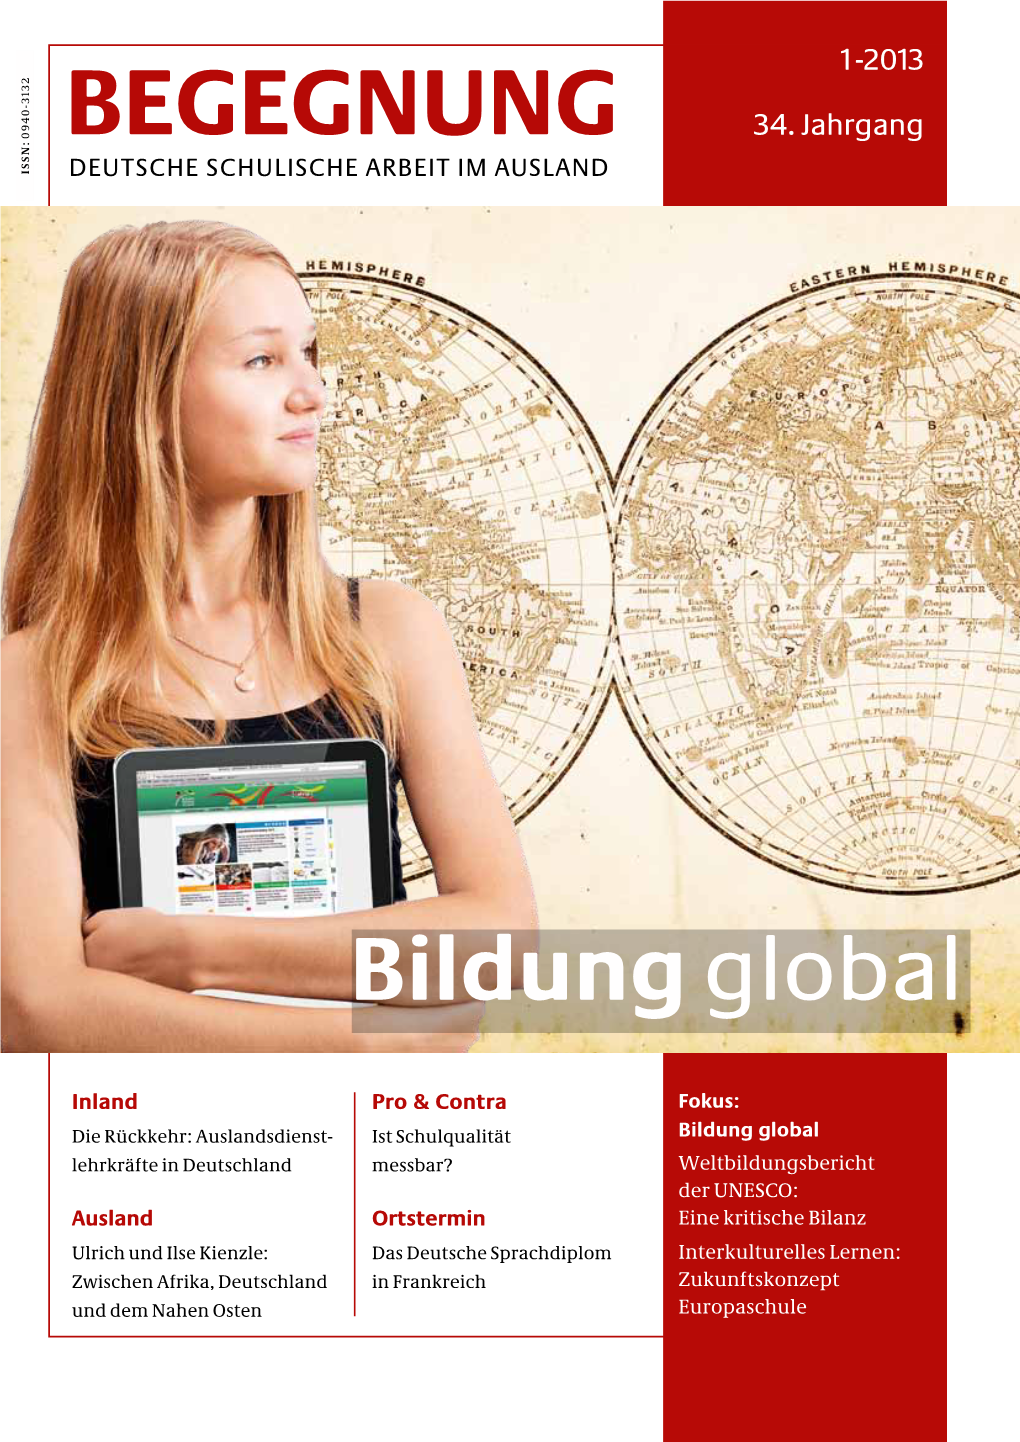 BEGEGNUNG 1/2013: Bildung Global